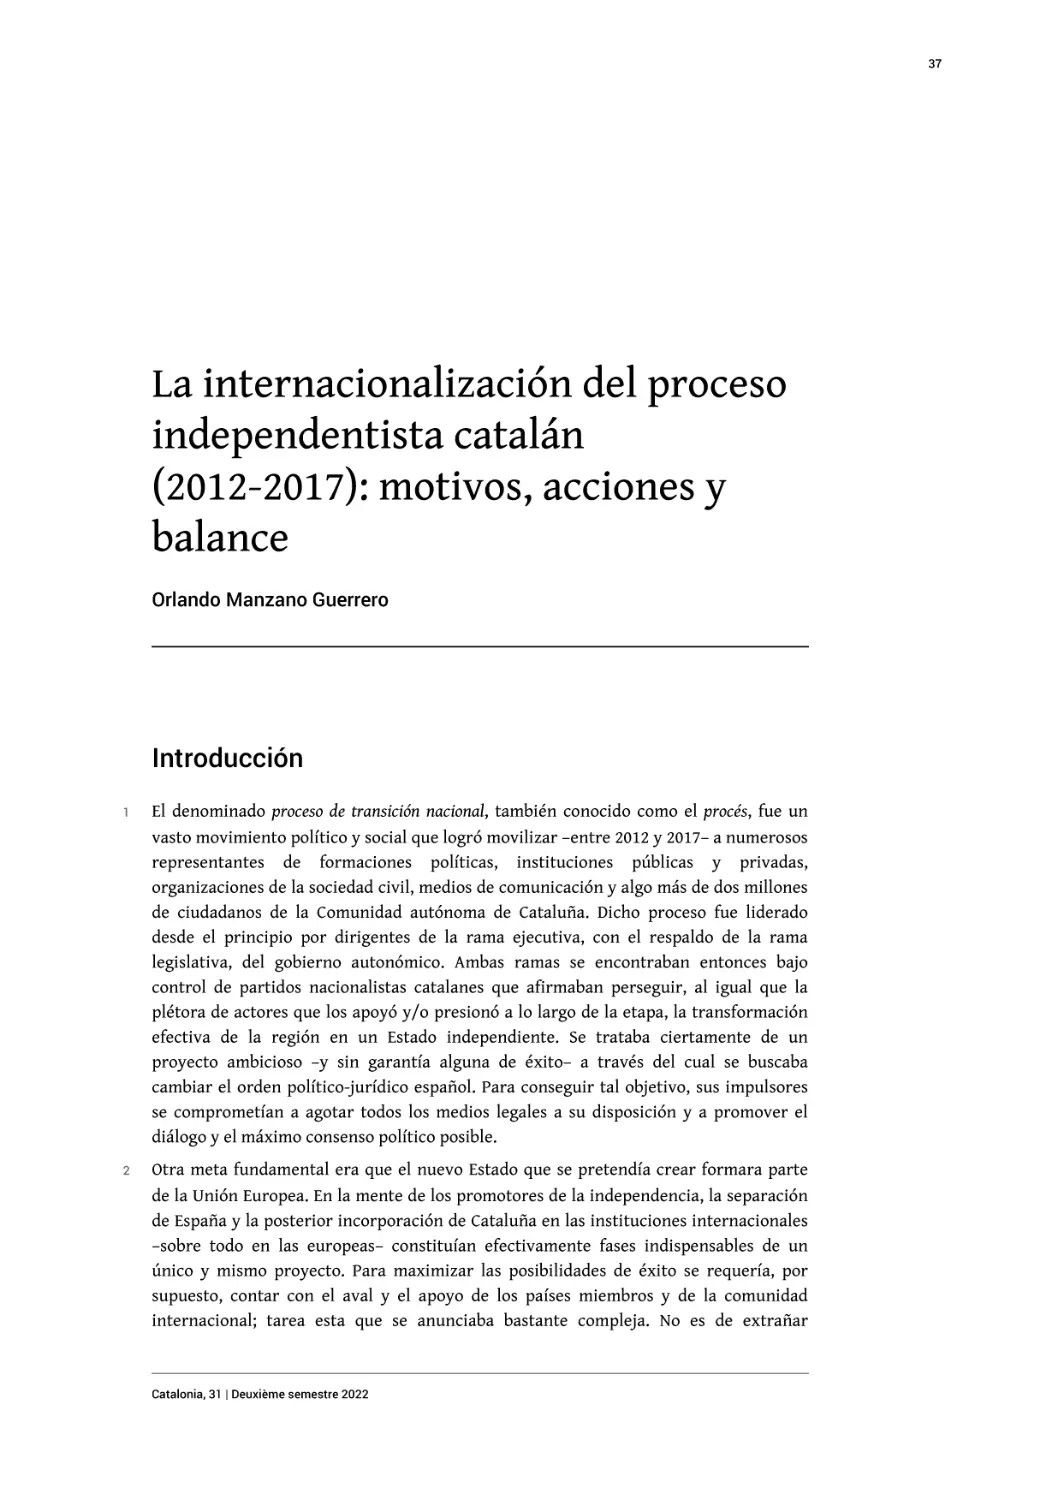 La internacionalización del proceso independentista catalán (2012-2017)